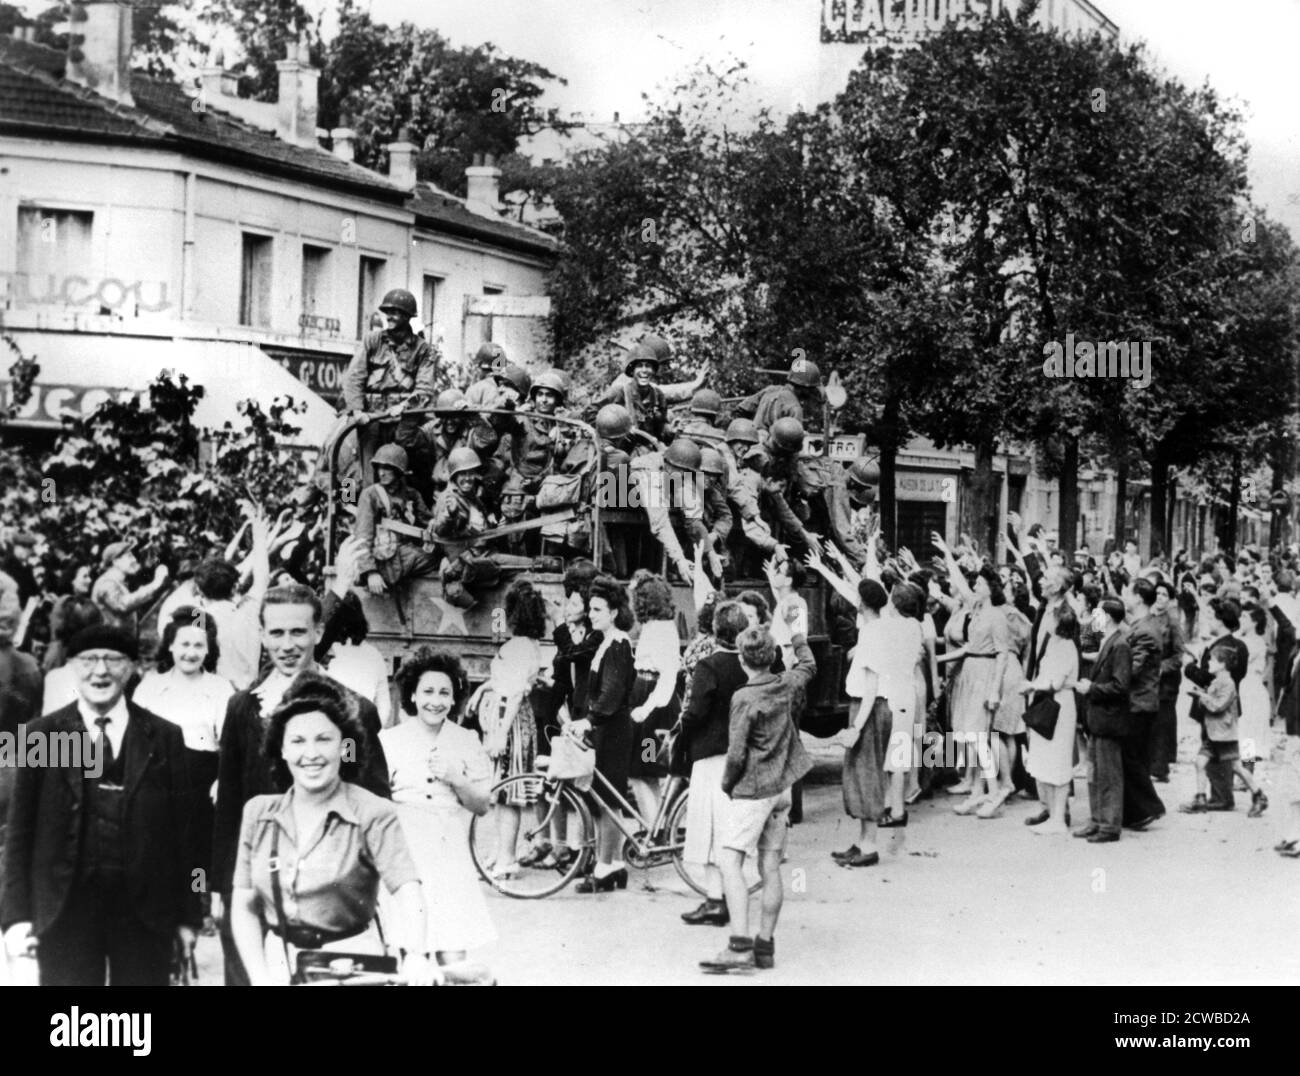 Libération de Paris, août 1944. Un chargement de soldats américains est accueilli par le peuple de la ville. Le photographe est inconnu. Banque D'Images